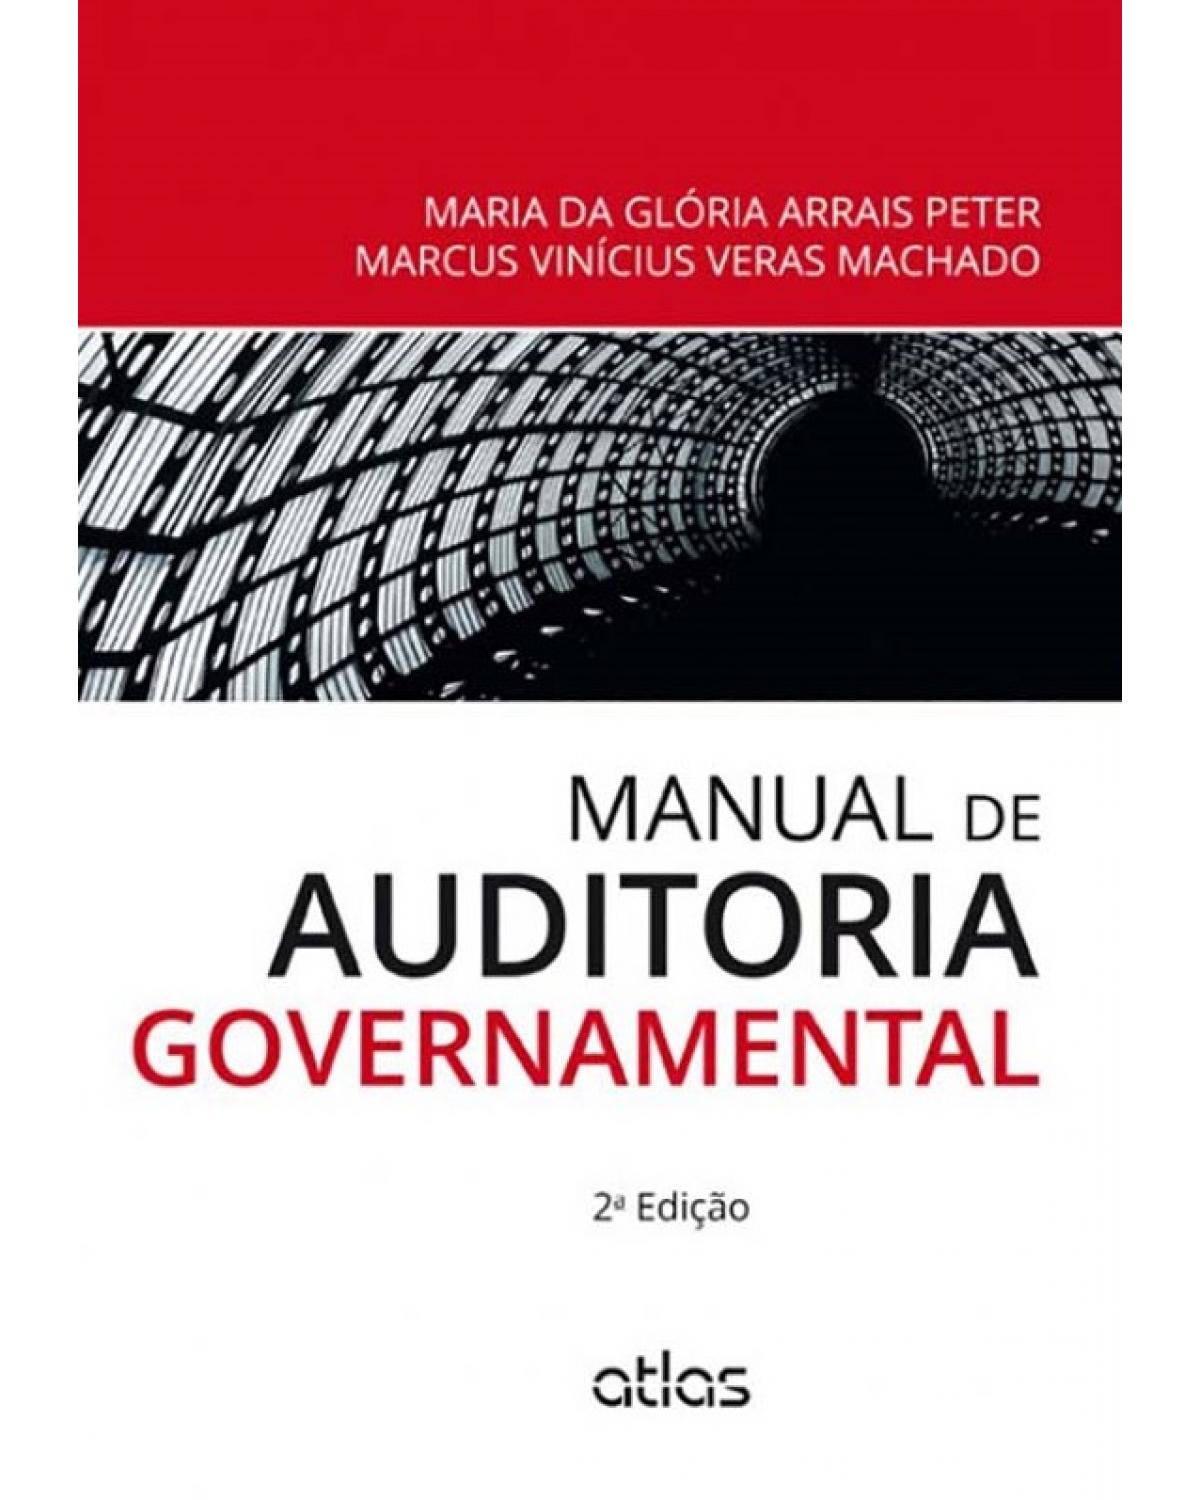 Manual de auditoria governamental - 2ª Edição | 2014